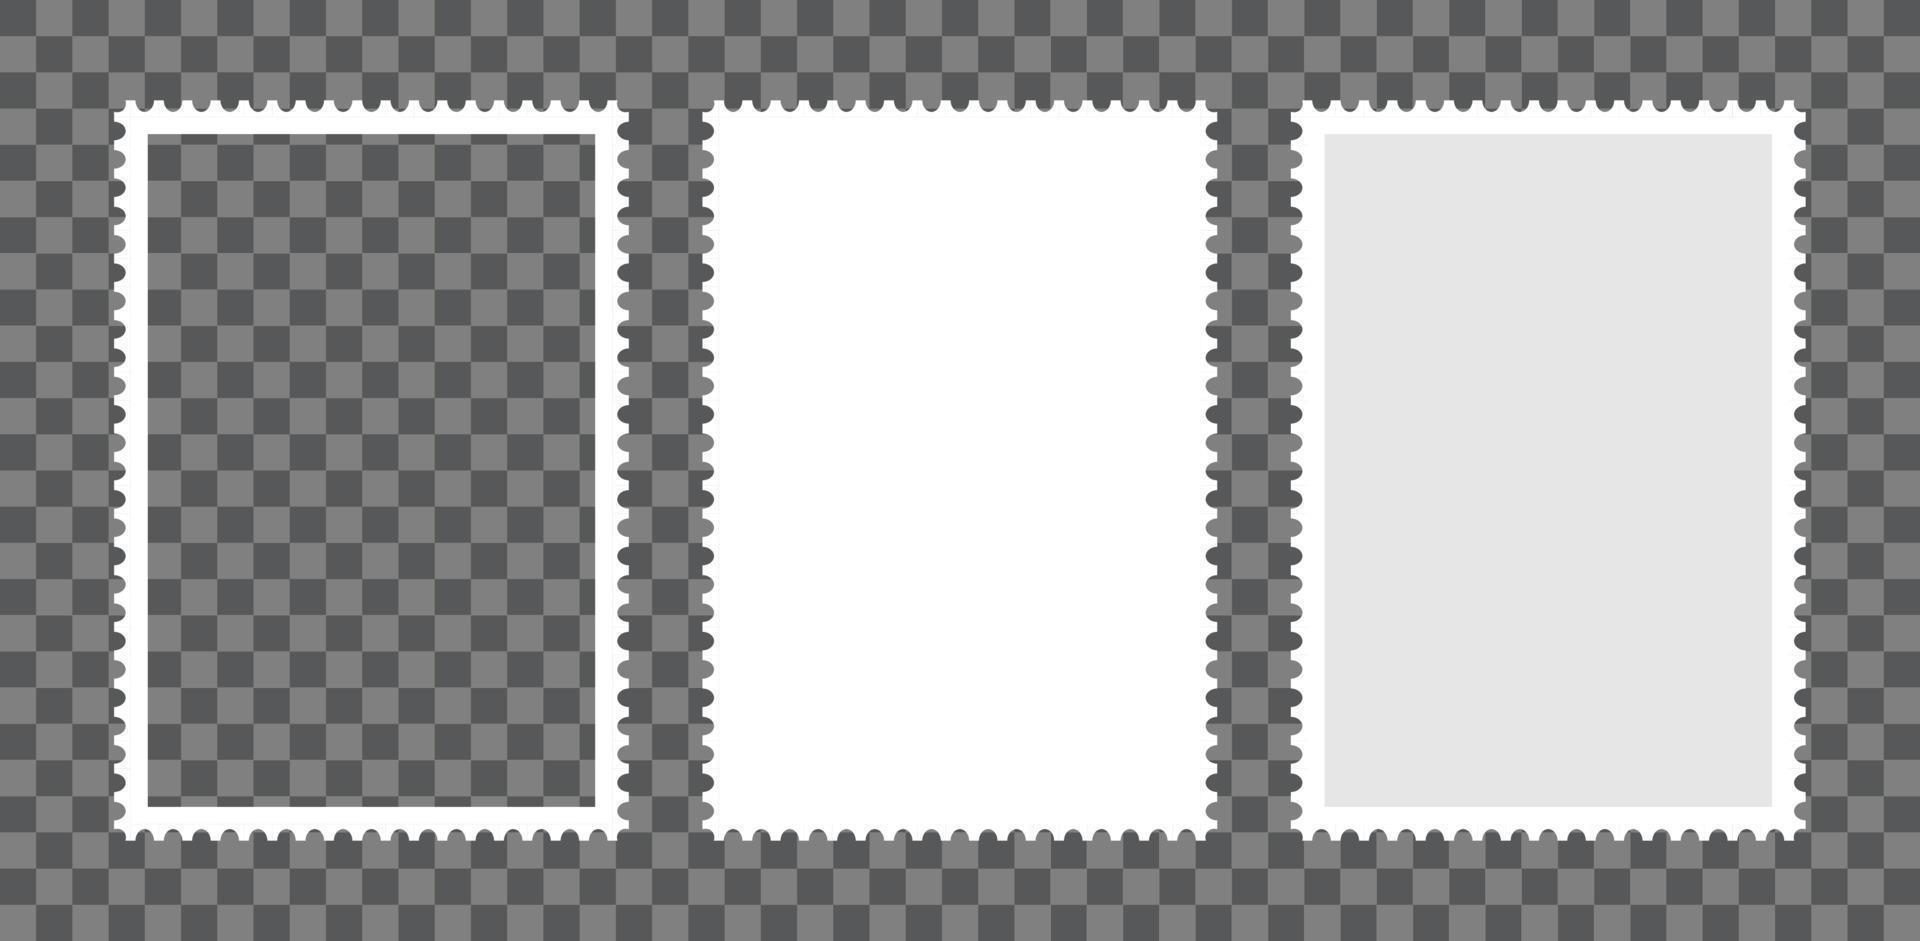 Briefmarkenrahmen gesetzt. leere Grenzschablone für Postkarten und Briefe. leere rechteckige und quadratische Briefmarken mit perforiertem Rand. vektorillustration lokalisiert auf hintergrund vektor